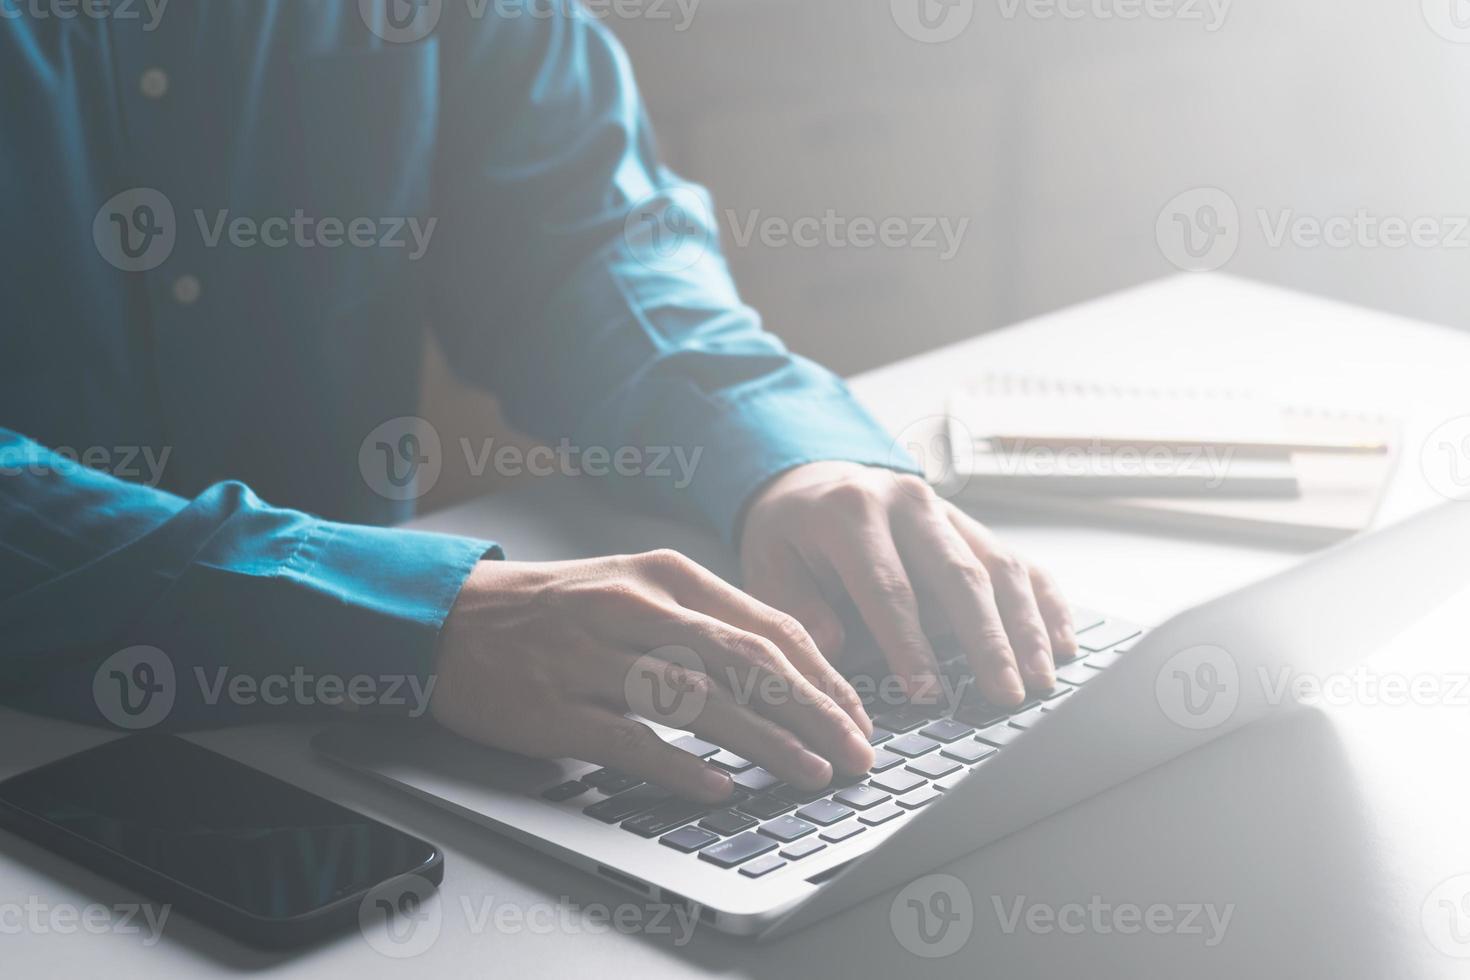 affärsmän arbetar på datorer och skriver på anteckningsblock med en penna för att beräkna bokslutet inom företaget. foto